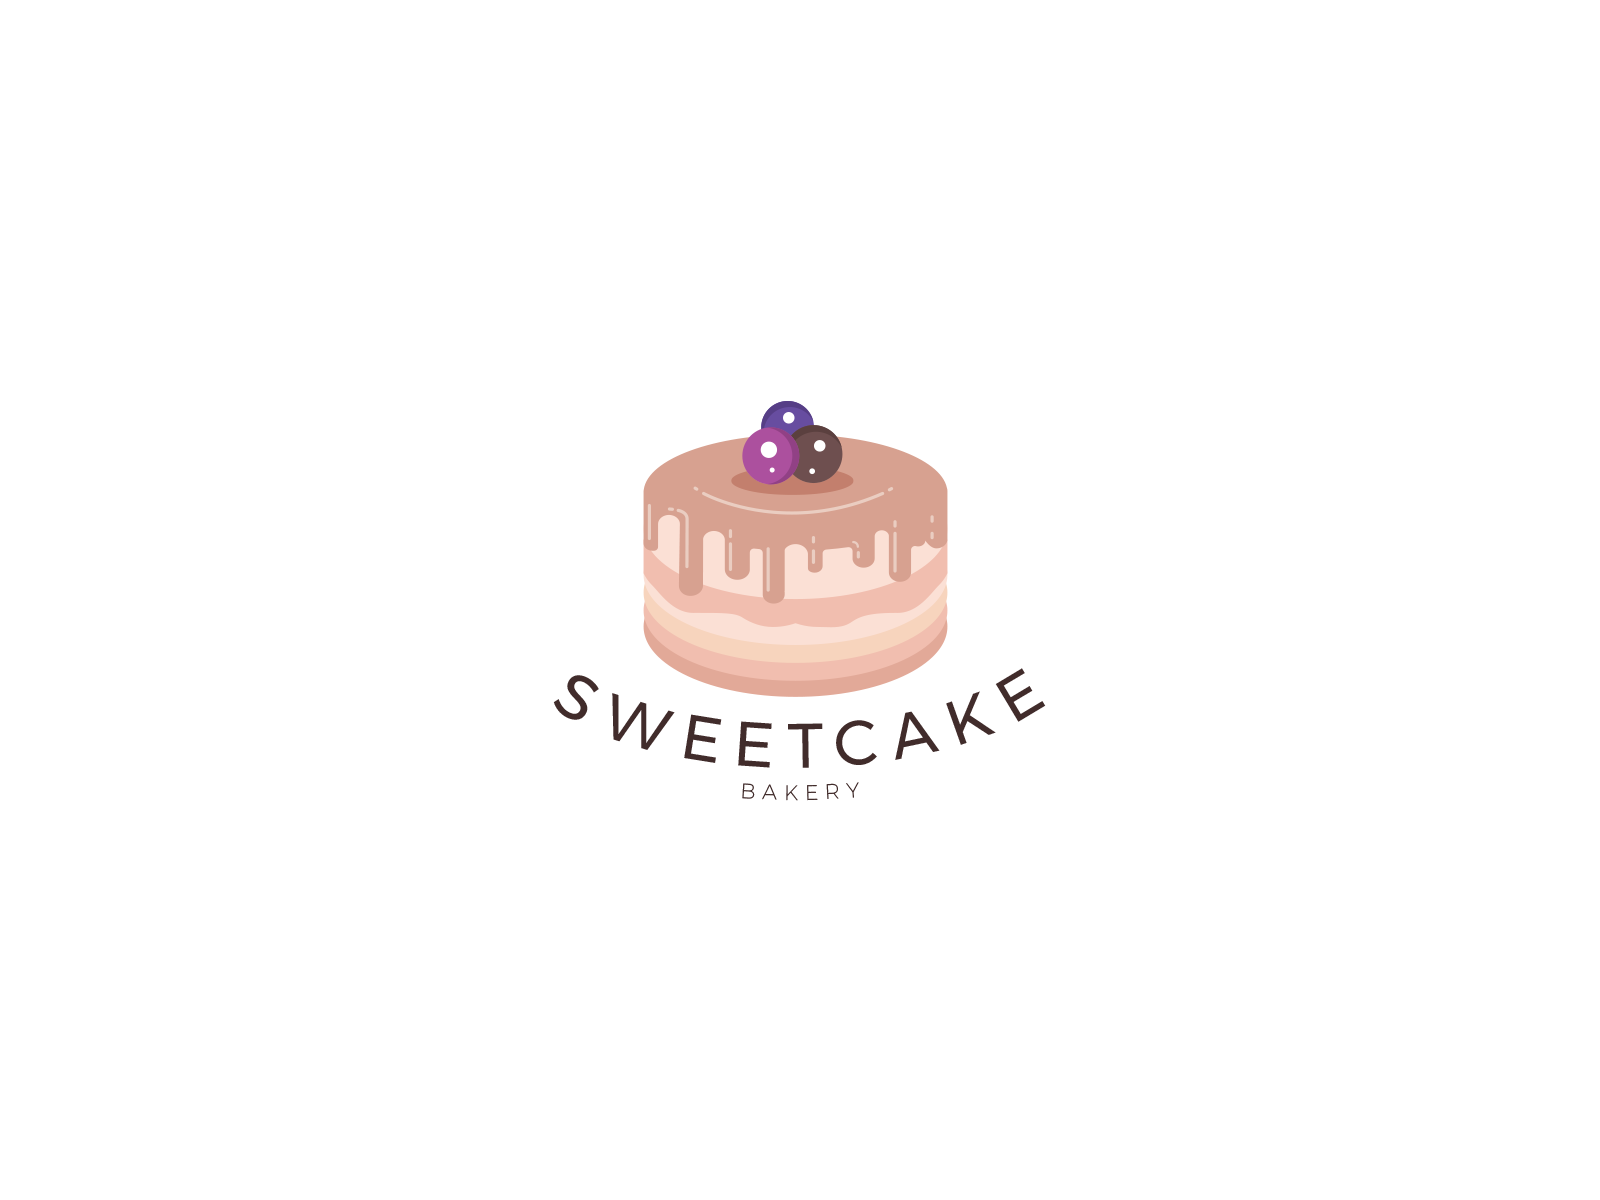 Cake logo maker | Design your own cake logo in seconds - LogoAI.com